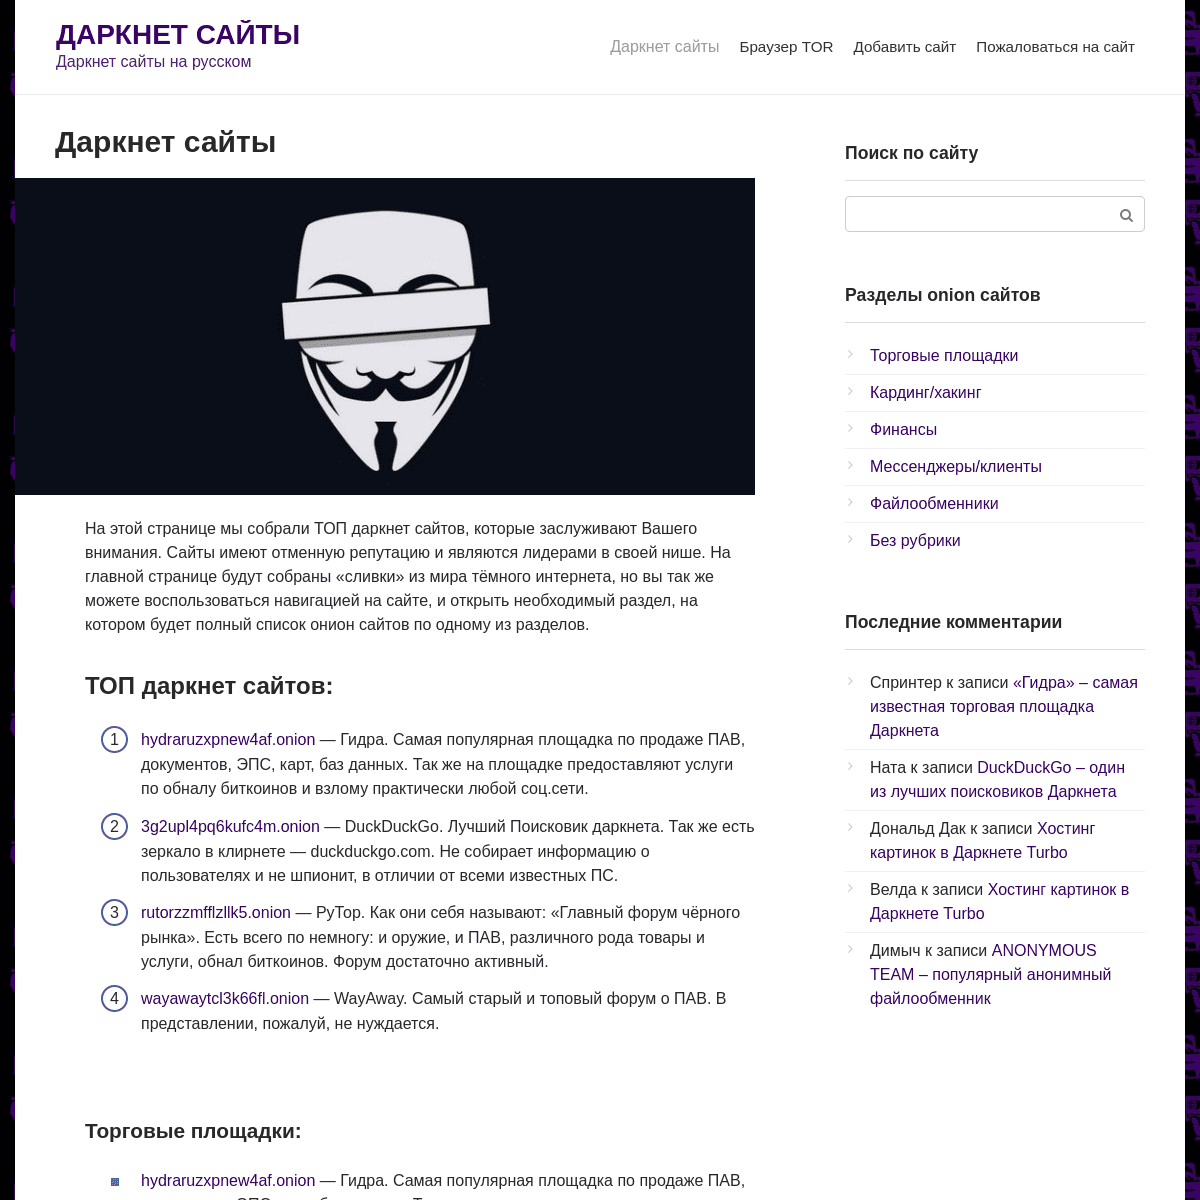 A complete backup of https://darknet-site.com